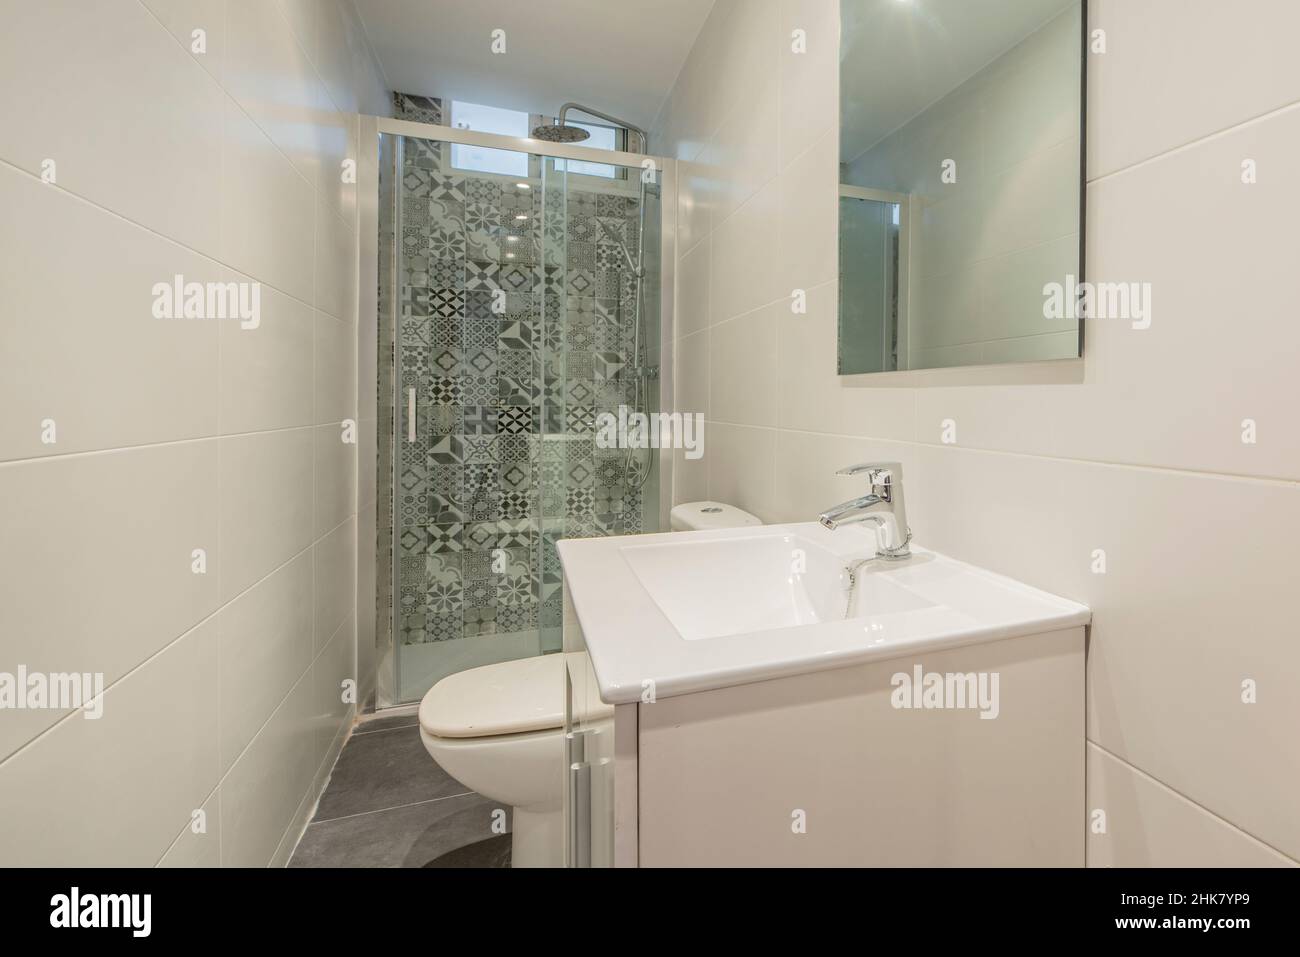 Das Badezimmer ist modern eingerichtet und verfügt über eine Duschwand mit hydraulischen Fliesen, einen weißen Kosmetikbereich und einen rahmenlosen Glasspiegel Stockfoto